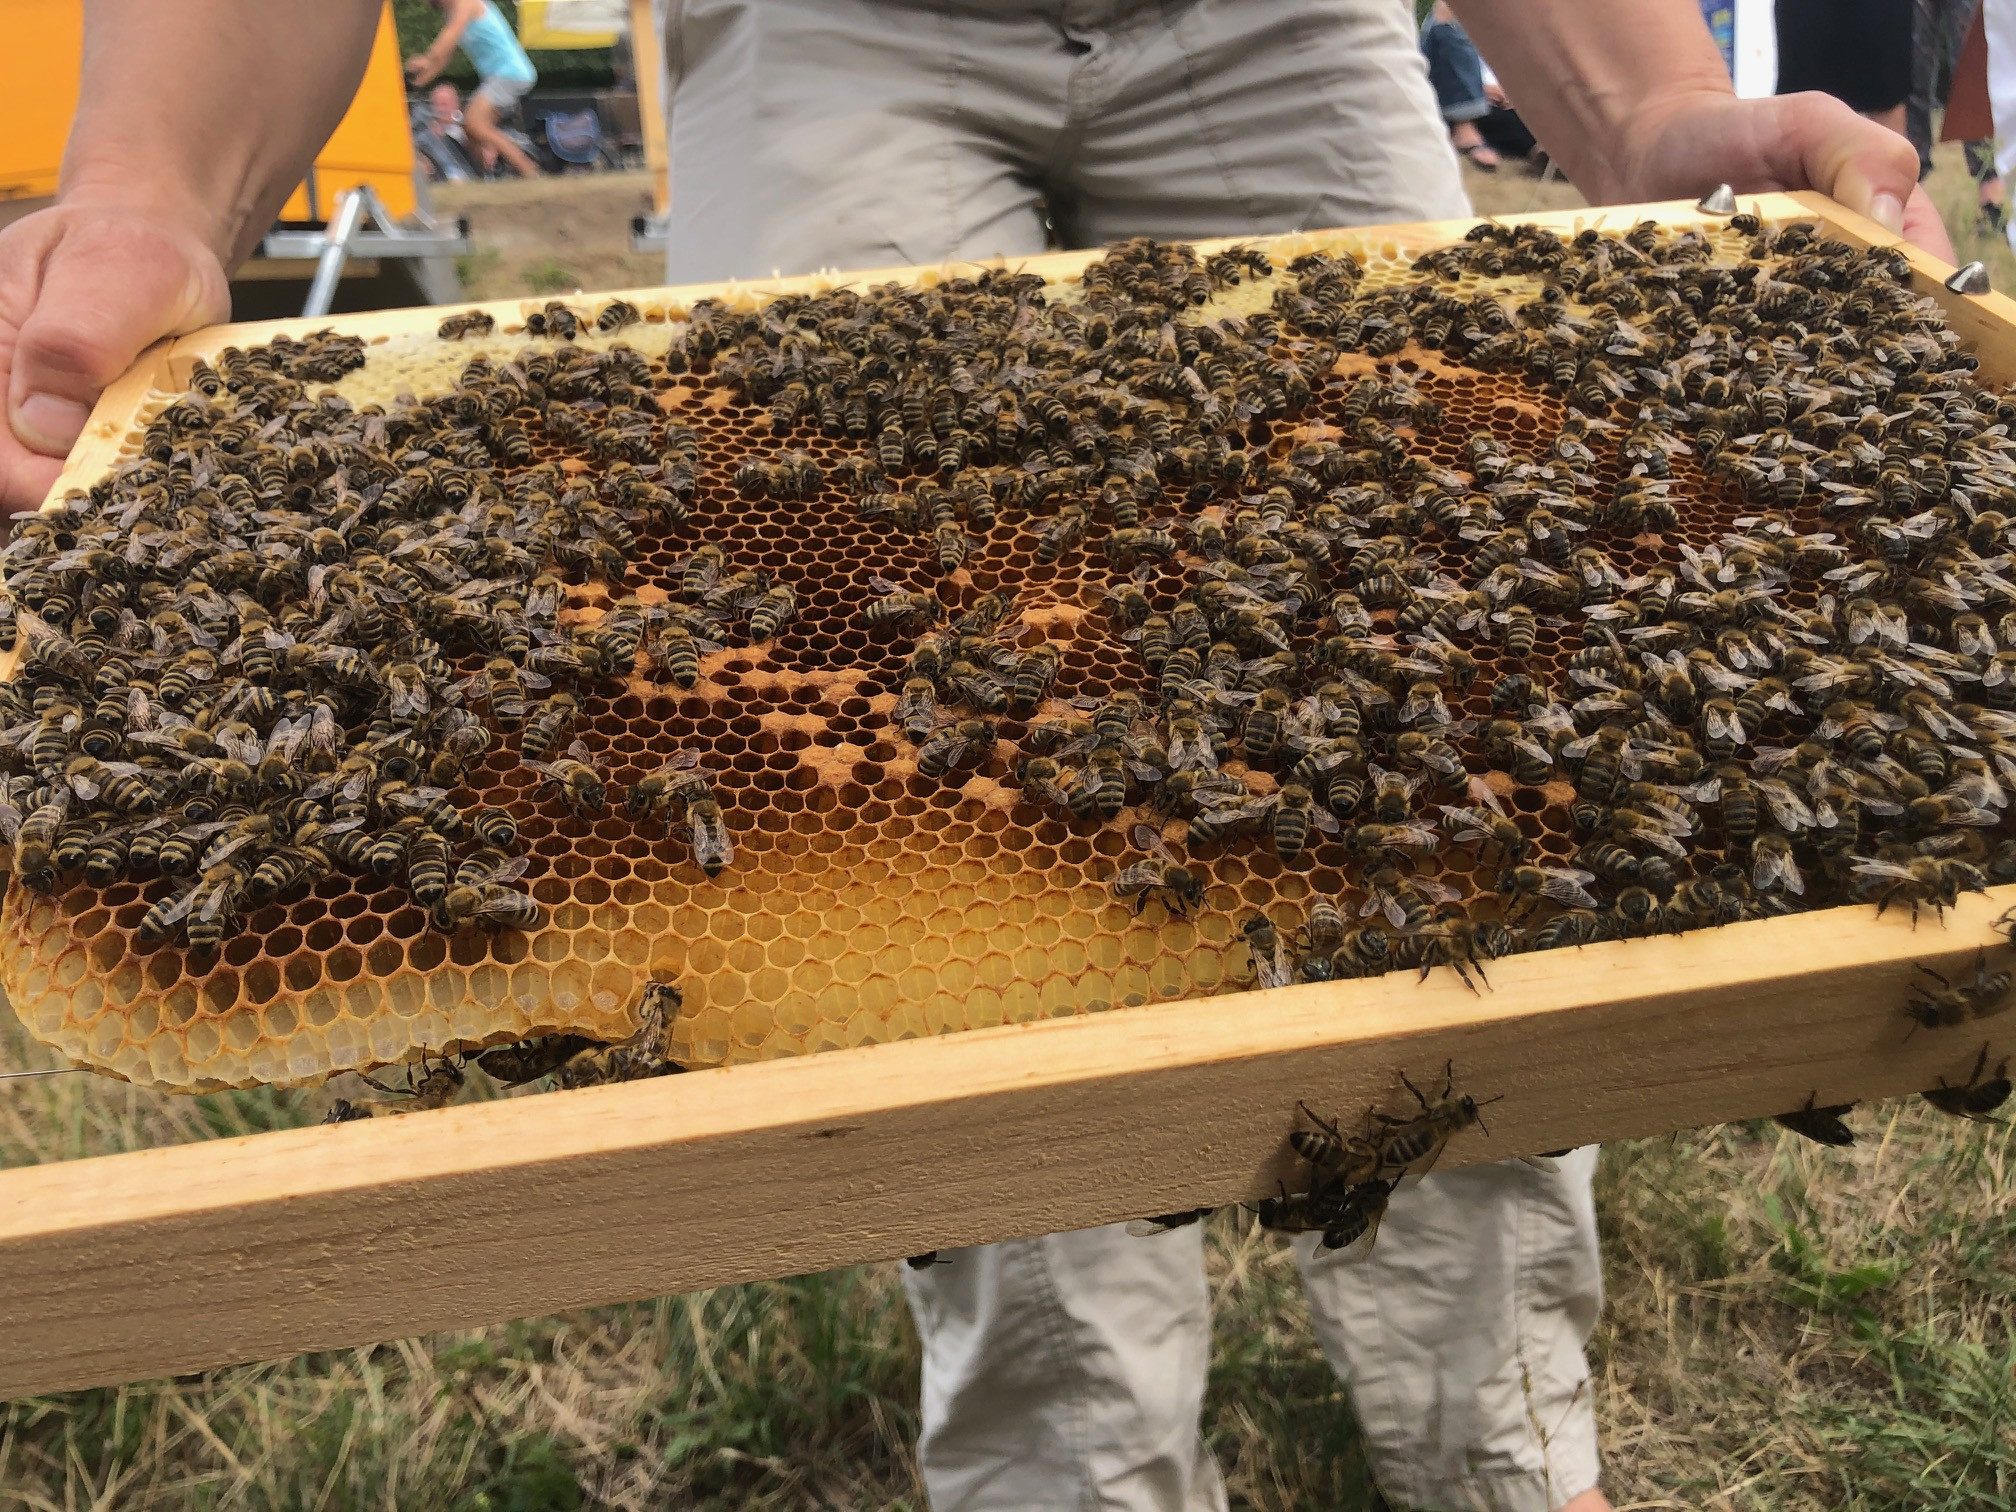 Uta zeigt eine Bienenwabe, die zum Großteil schon mit Honig gefüllt ist.